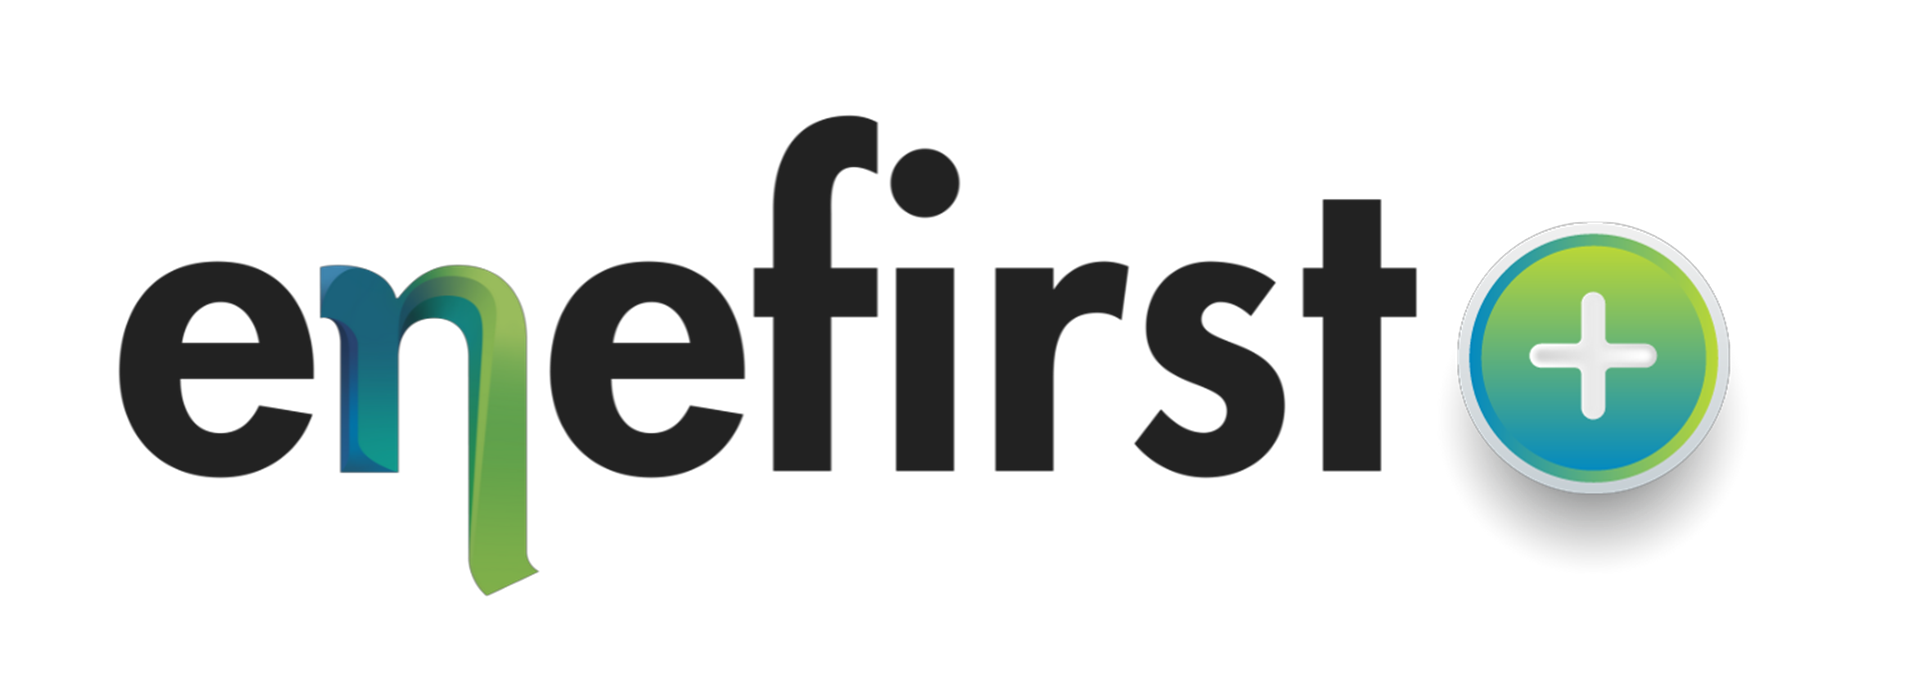 Il logo del progetto ENERFIRST Plus su sfondo bianco